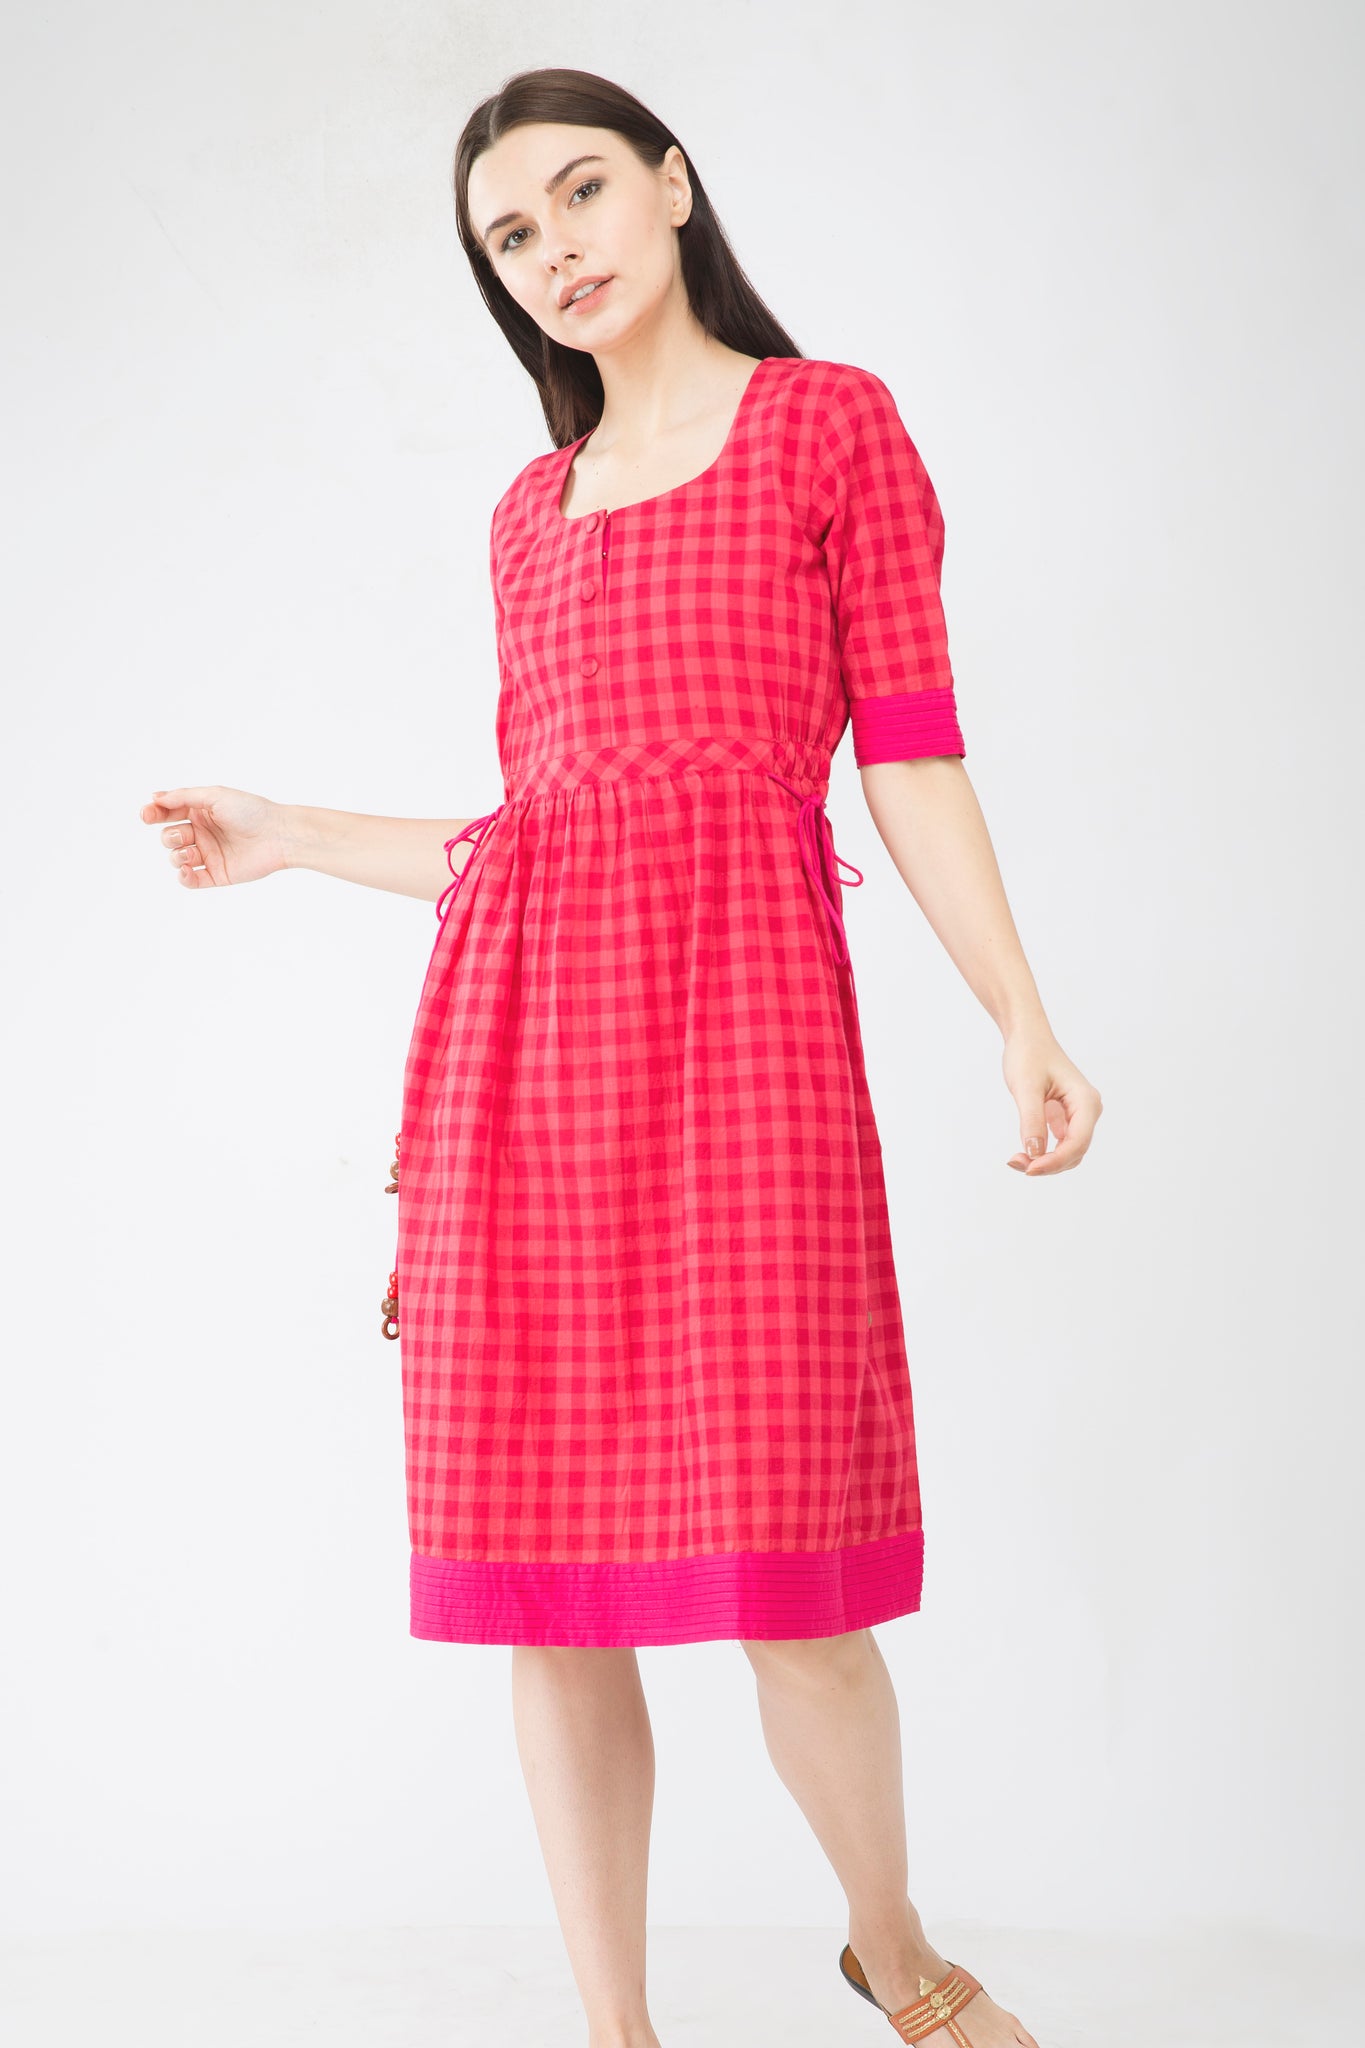 Red Checks Handloom Dress - Sizes Left - S-1 , M-1